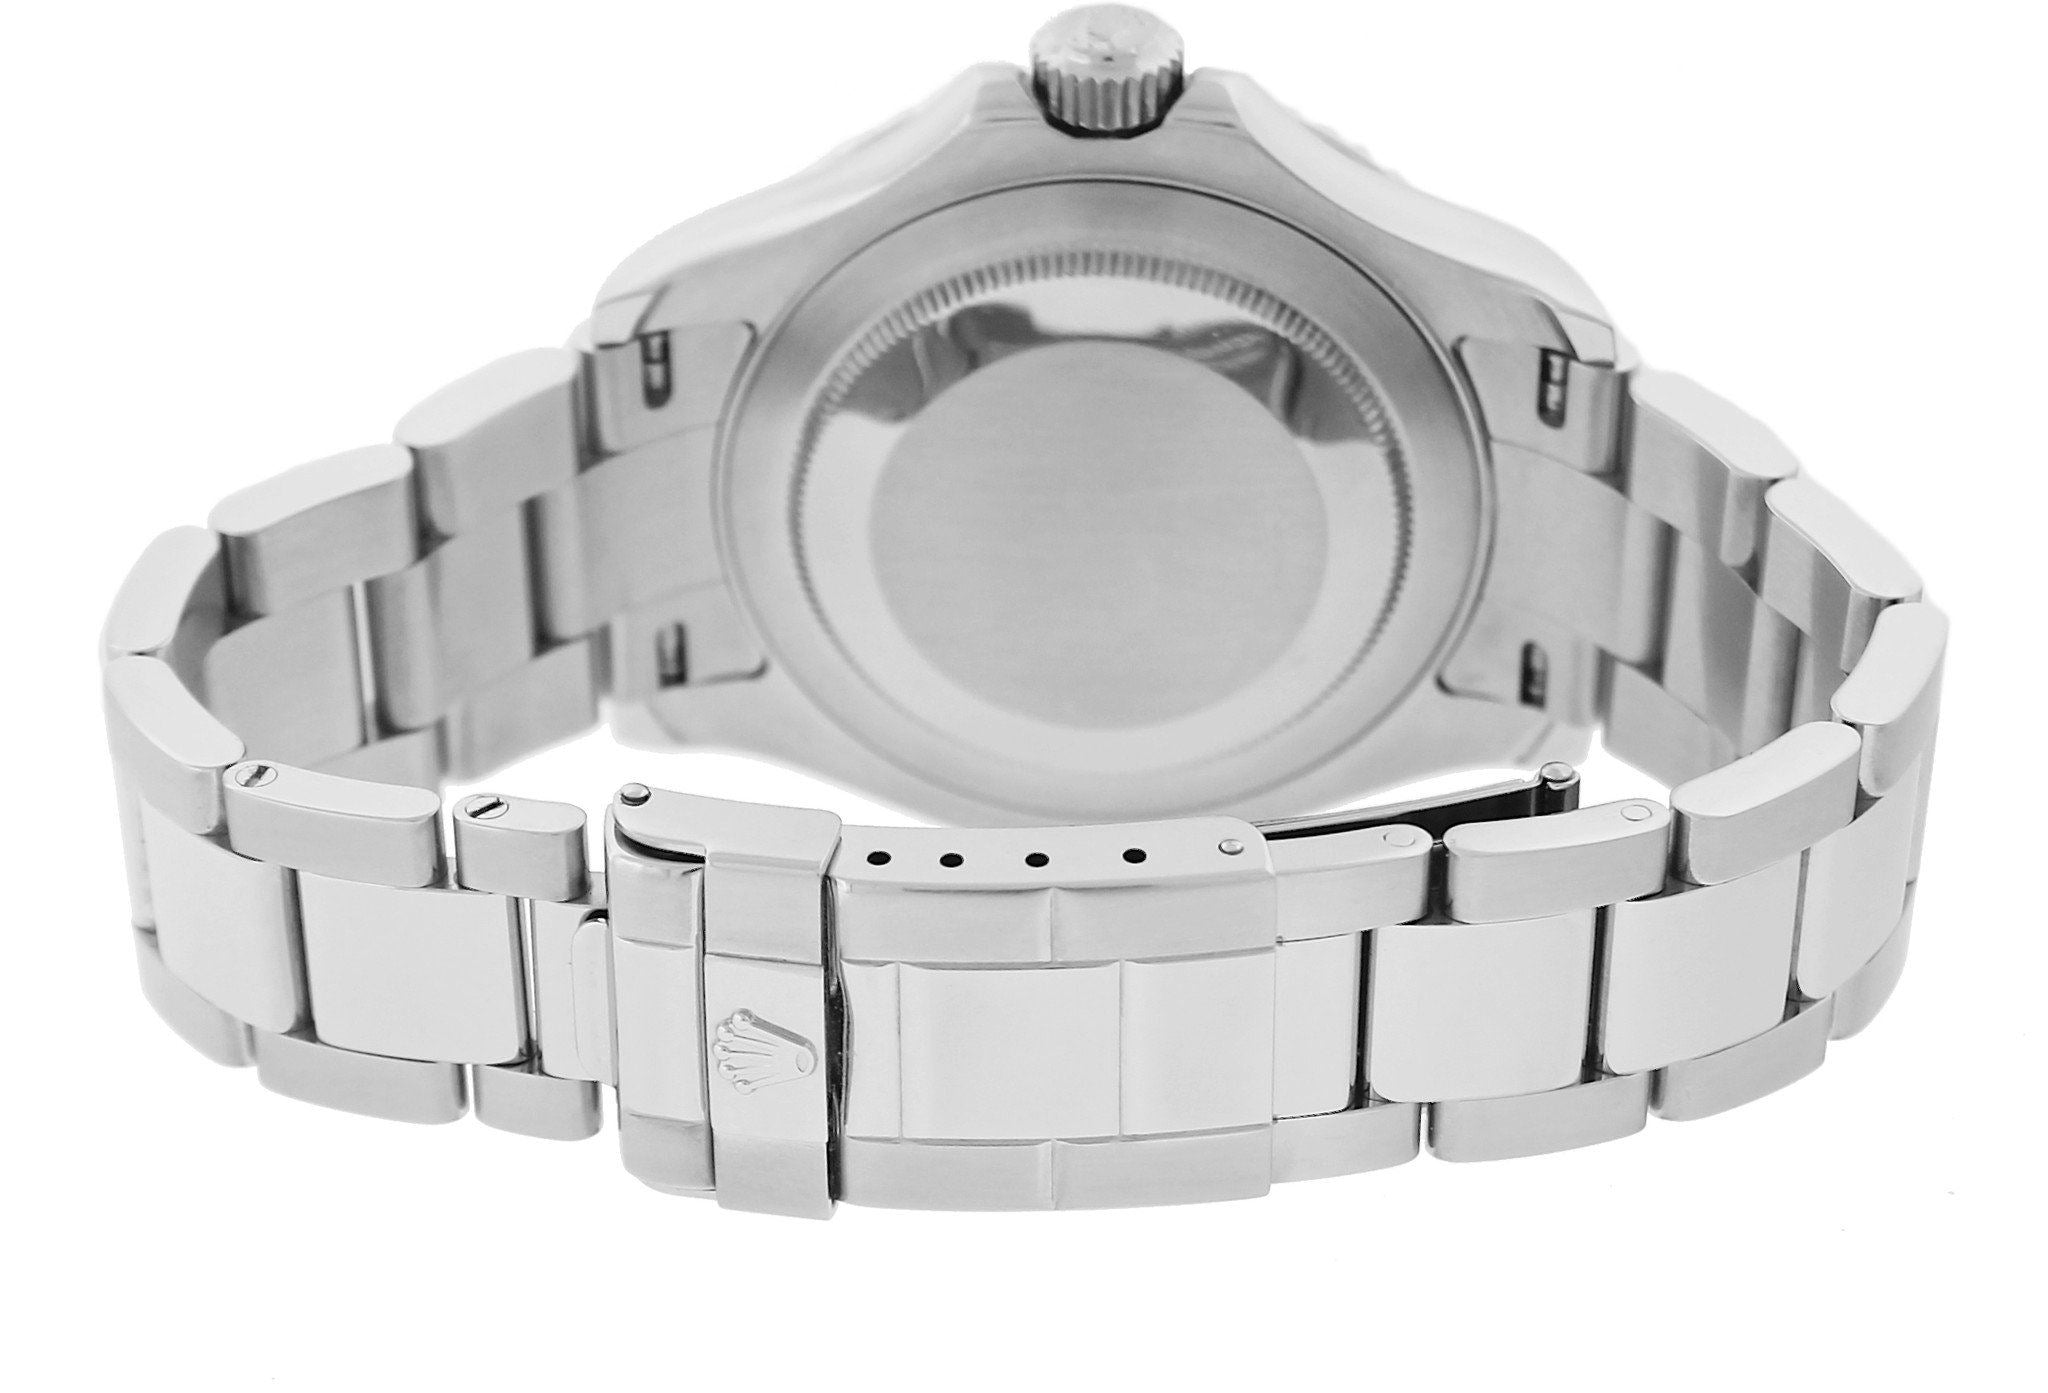 MINT 2007 Rolex Yacht-Master 16622 D Stainless Platinum 40mm Swiss Date Watch